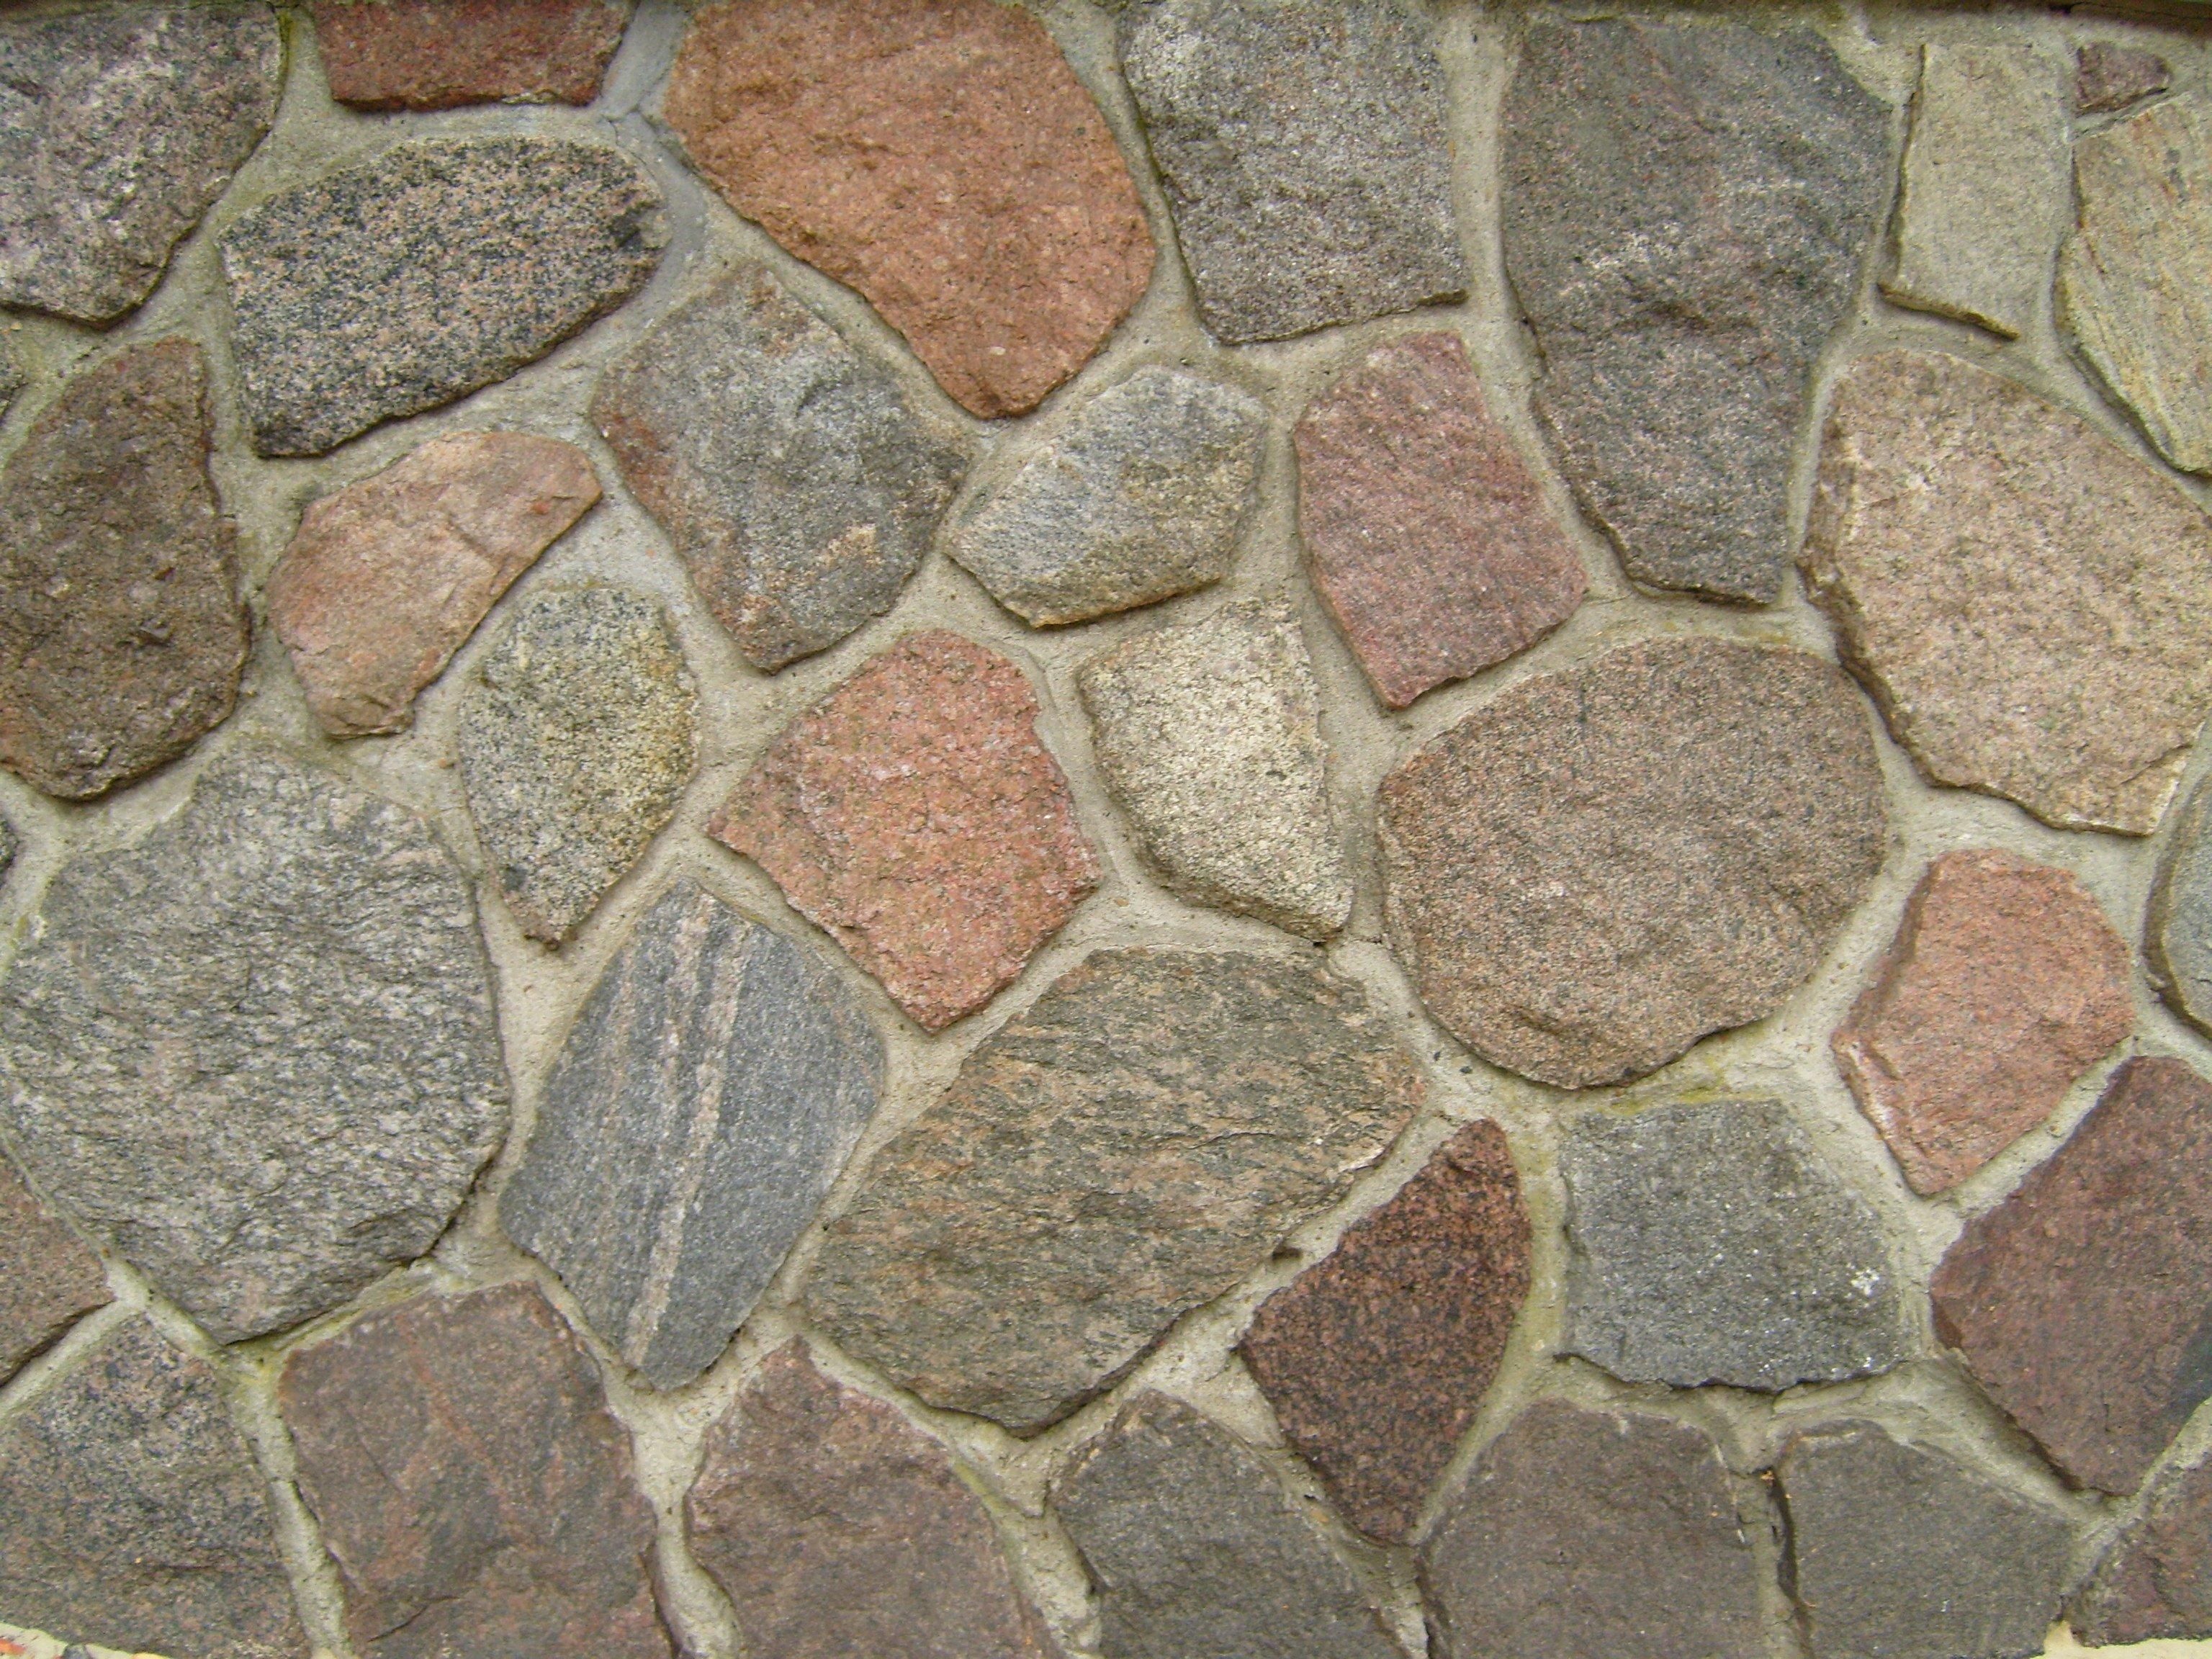 File:Stone pavement stone path.jpg - Wikimedia Commons